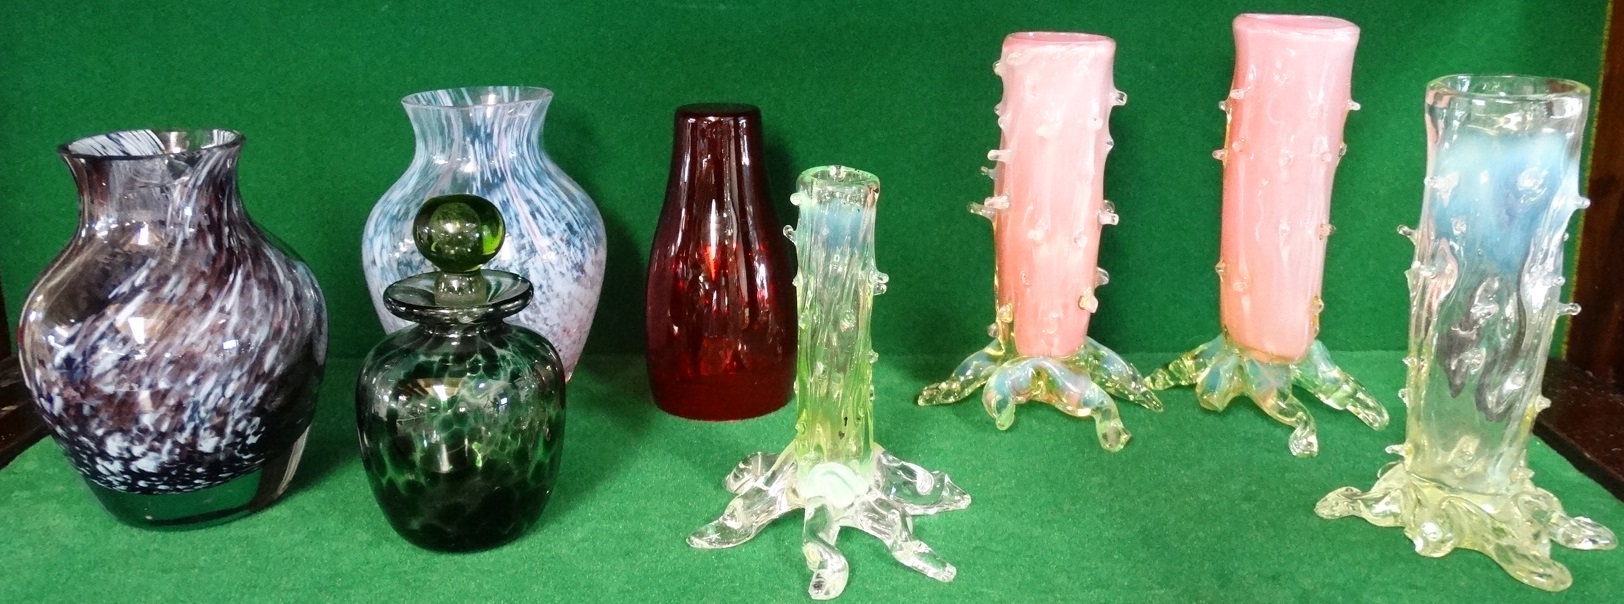 2 CAITHNESS GLASS VASES, MOTTLED GLASS SCENTS BOTTLE, RED VASE & 4 BRAMBLE GLASS VASES